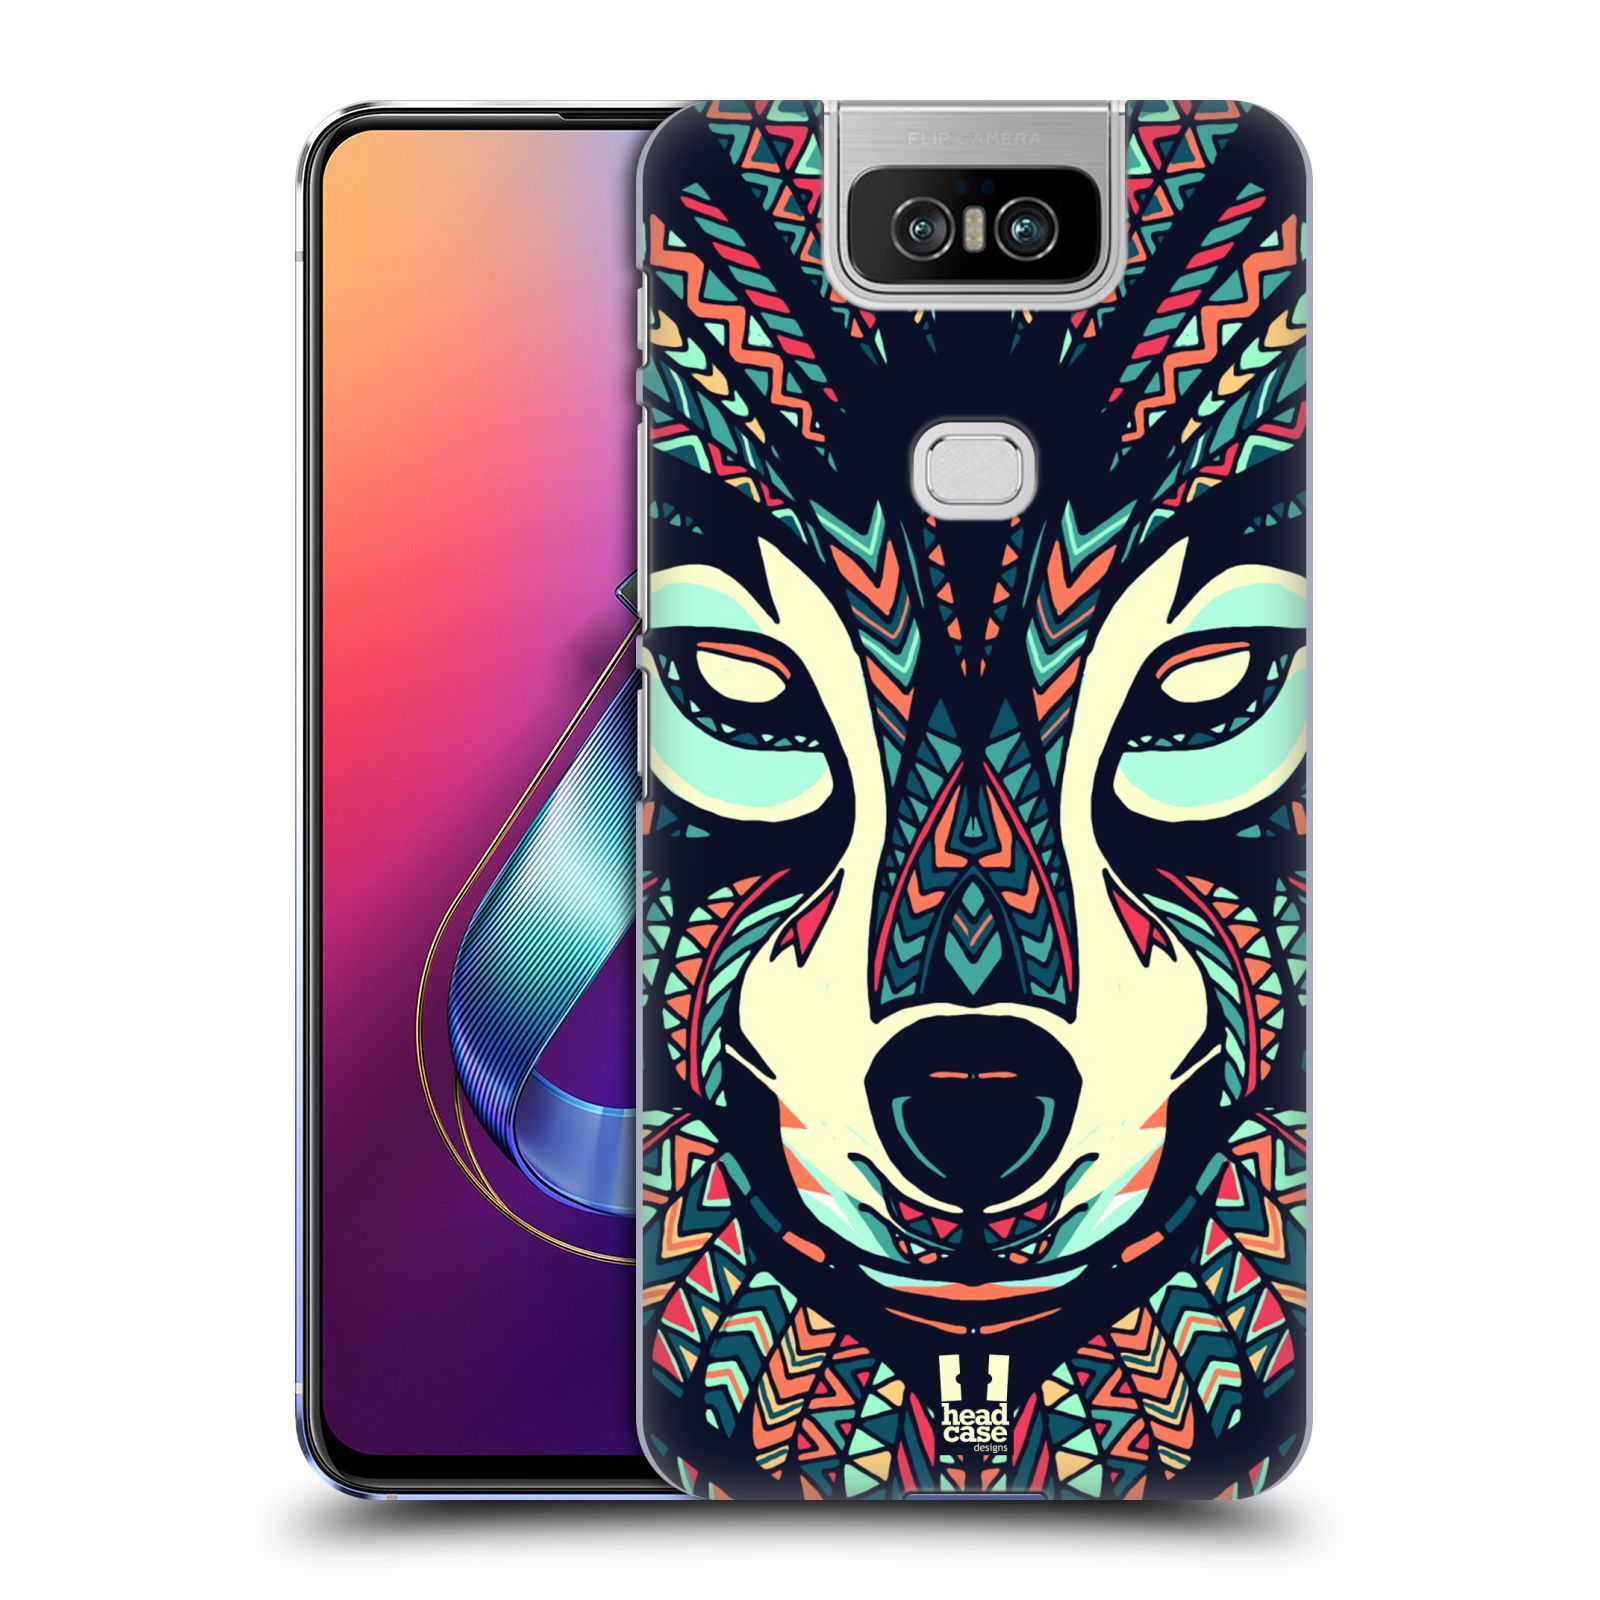 Pouzdro na mobil Asus Zenfone 6 ZS630KL - HEAD CASE - vzor Aztécký motiv zvíře 3 vlk